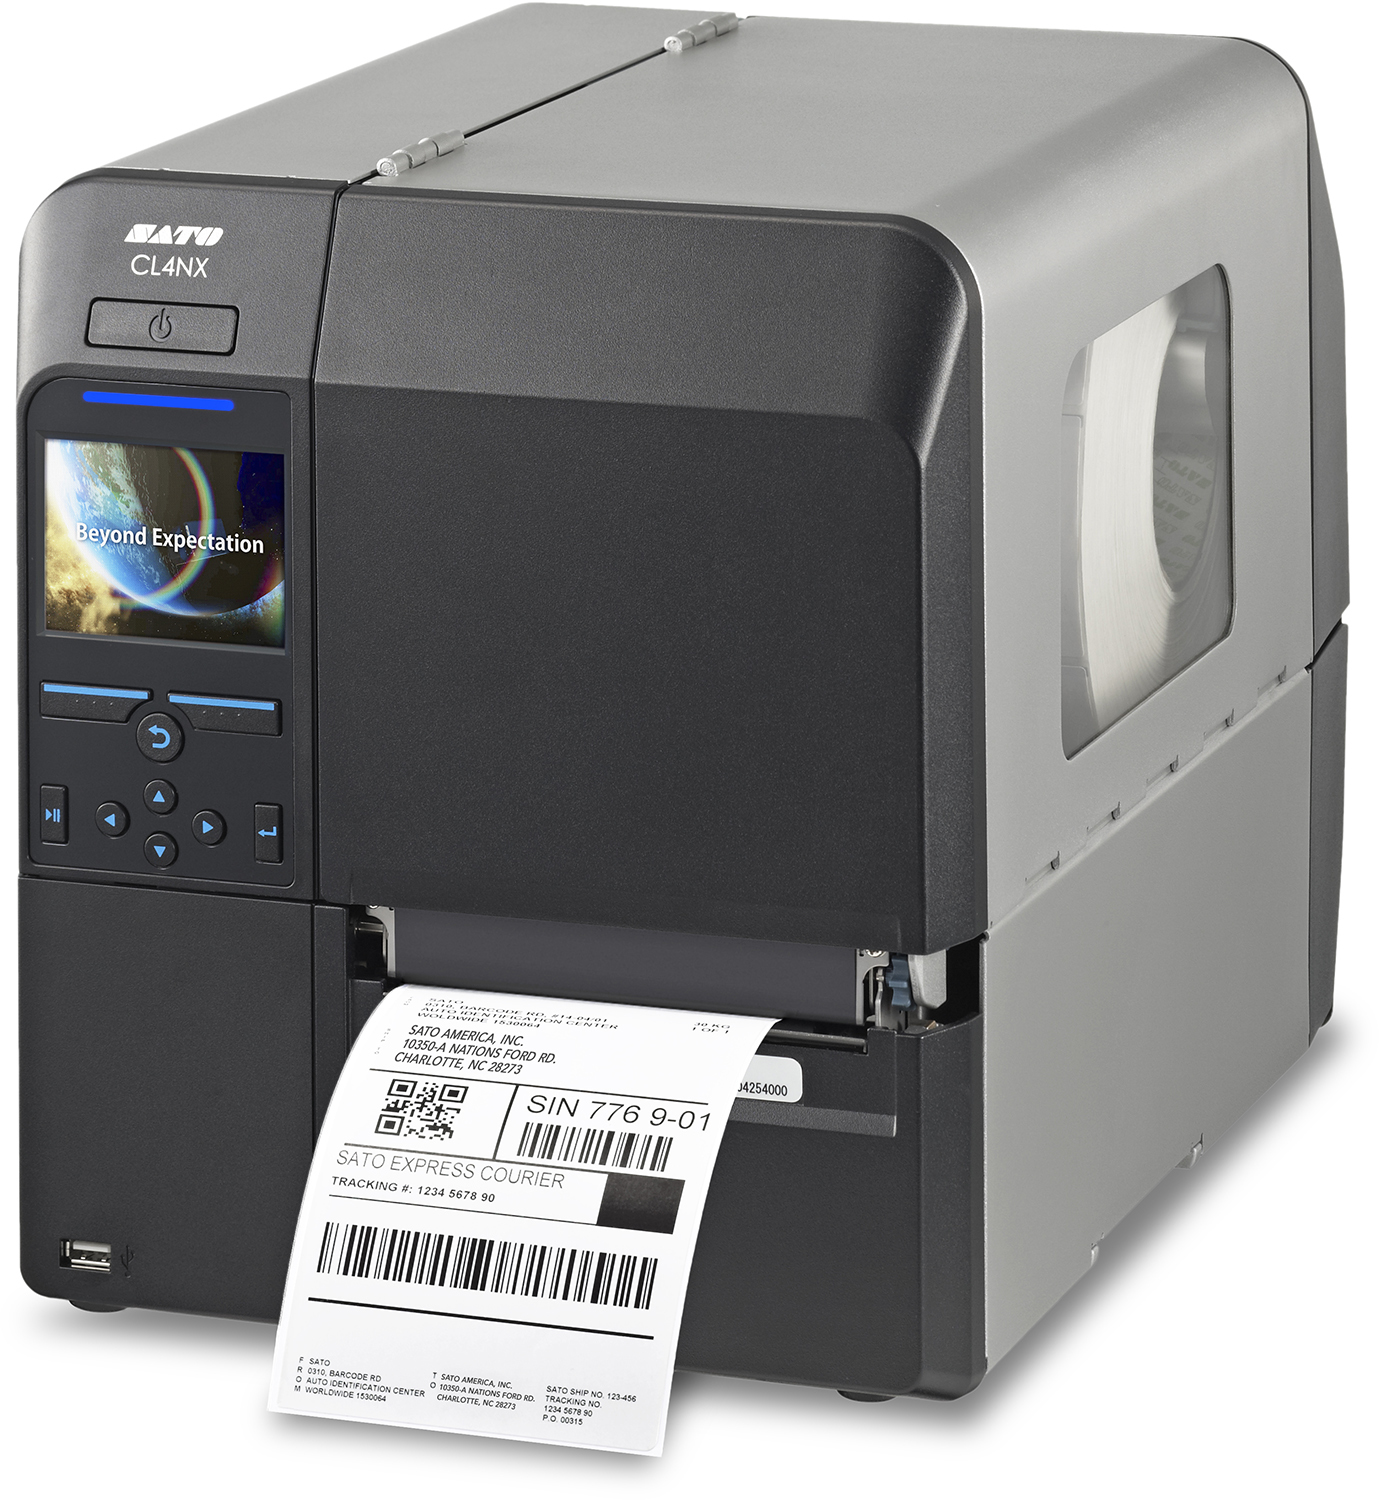 Sato CL4NX Printer Parts